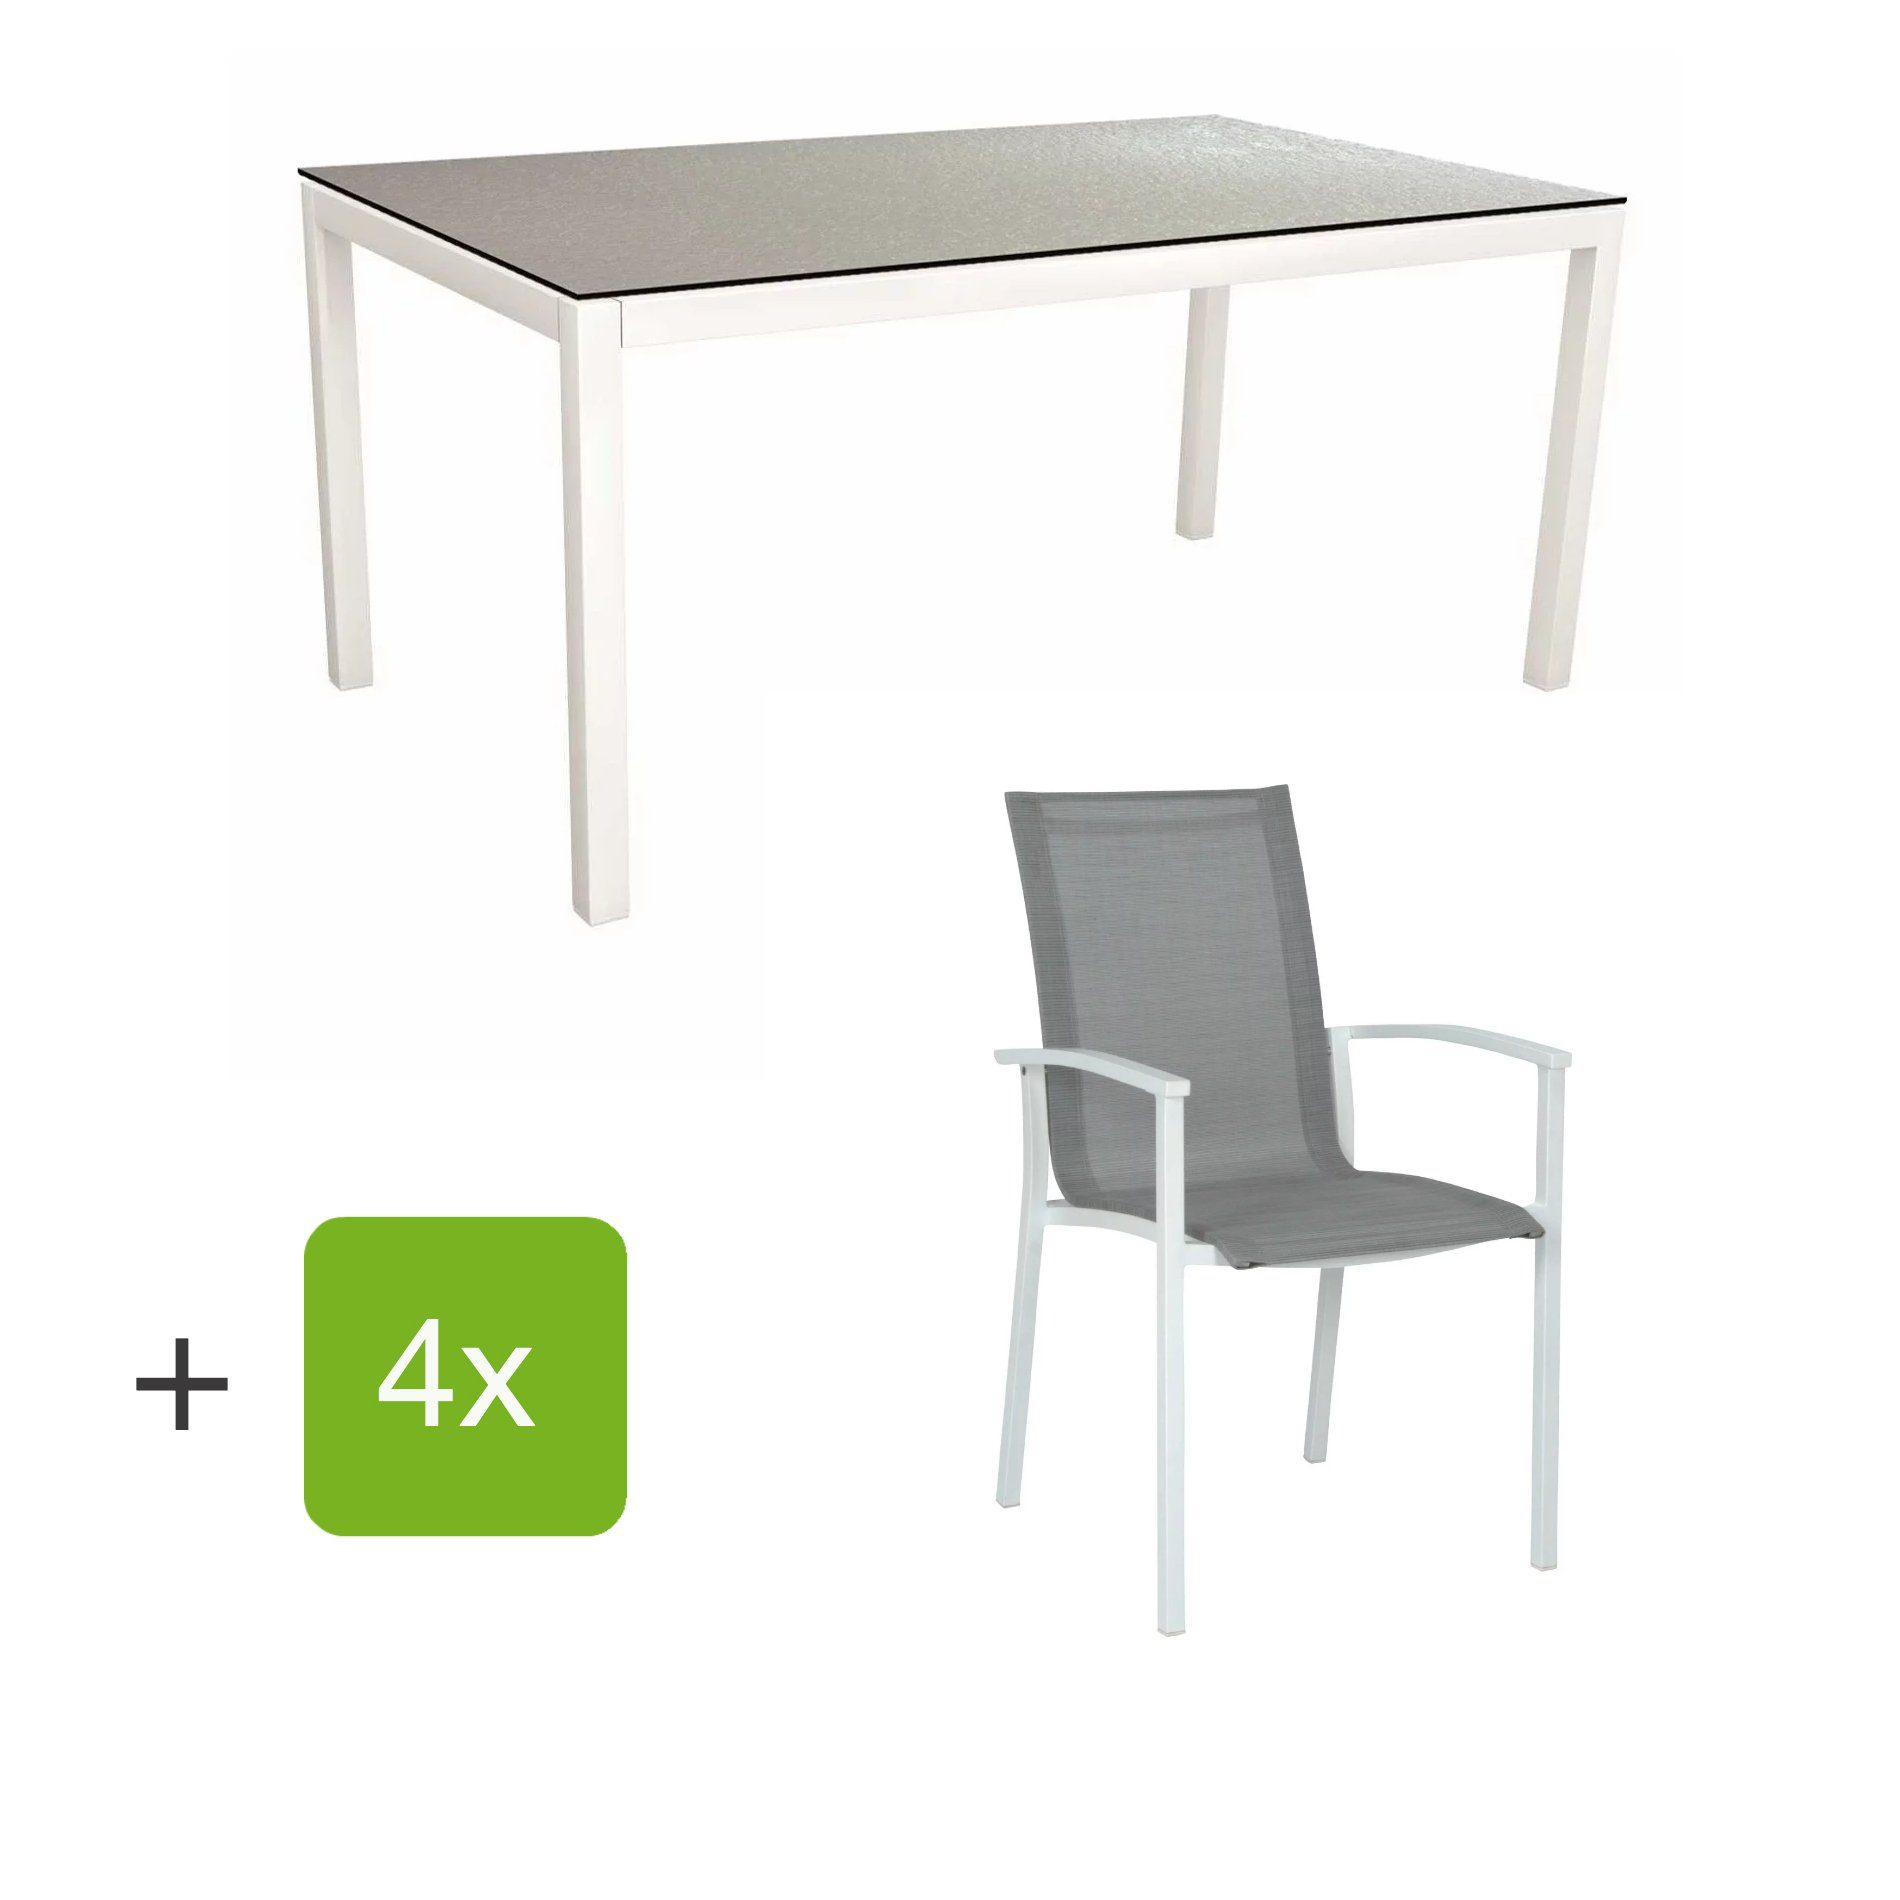 Stern Gartenmöbel-Set "Evoee", Gestelle Aluminium weiß, Sitzfläche Textilgewebe silberfarben, Tischplatte HPL Uni Grau